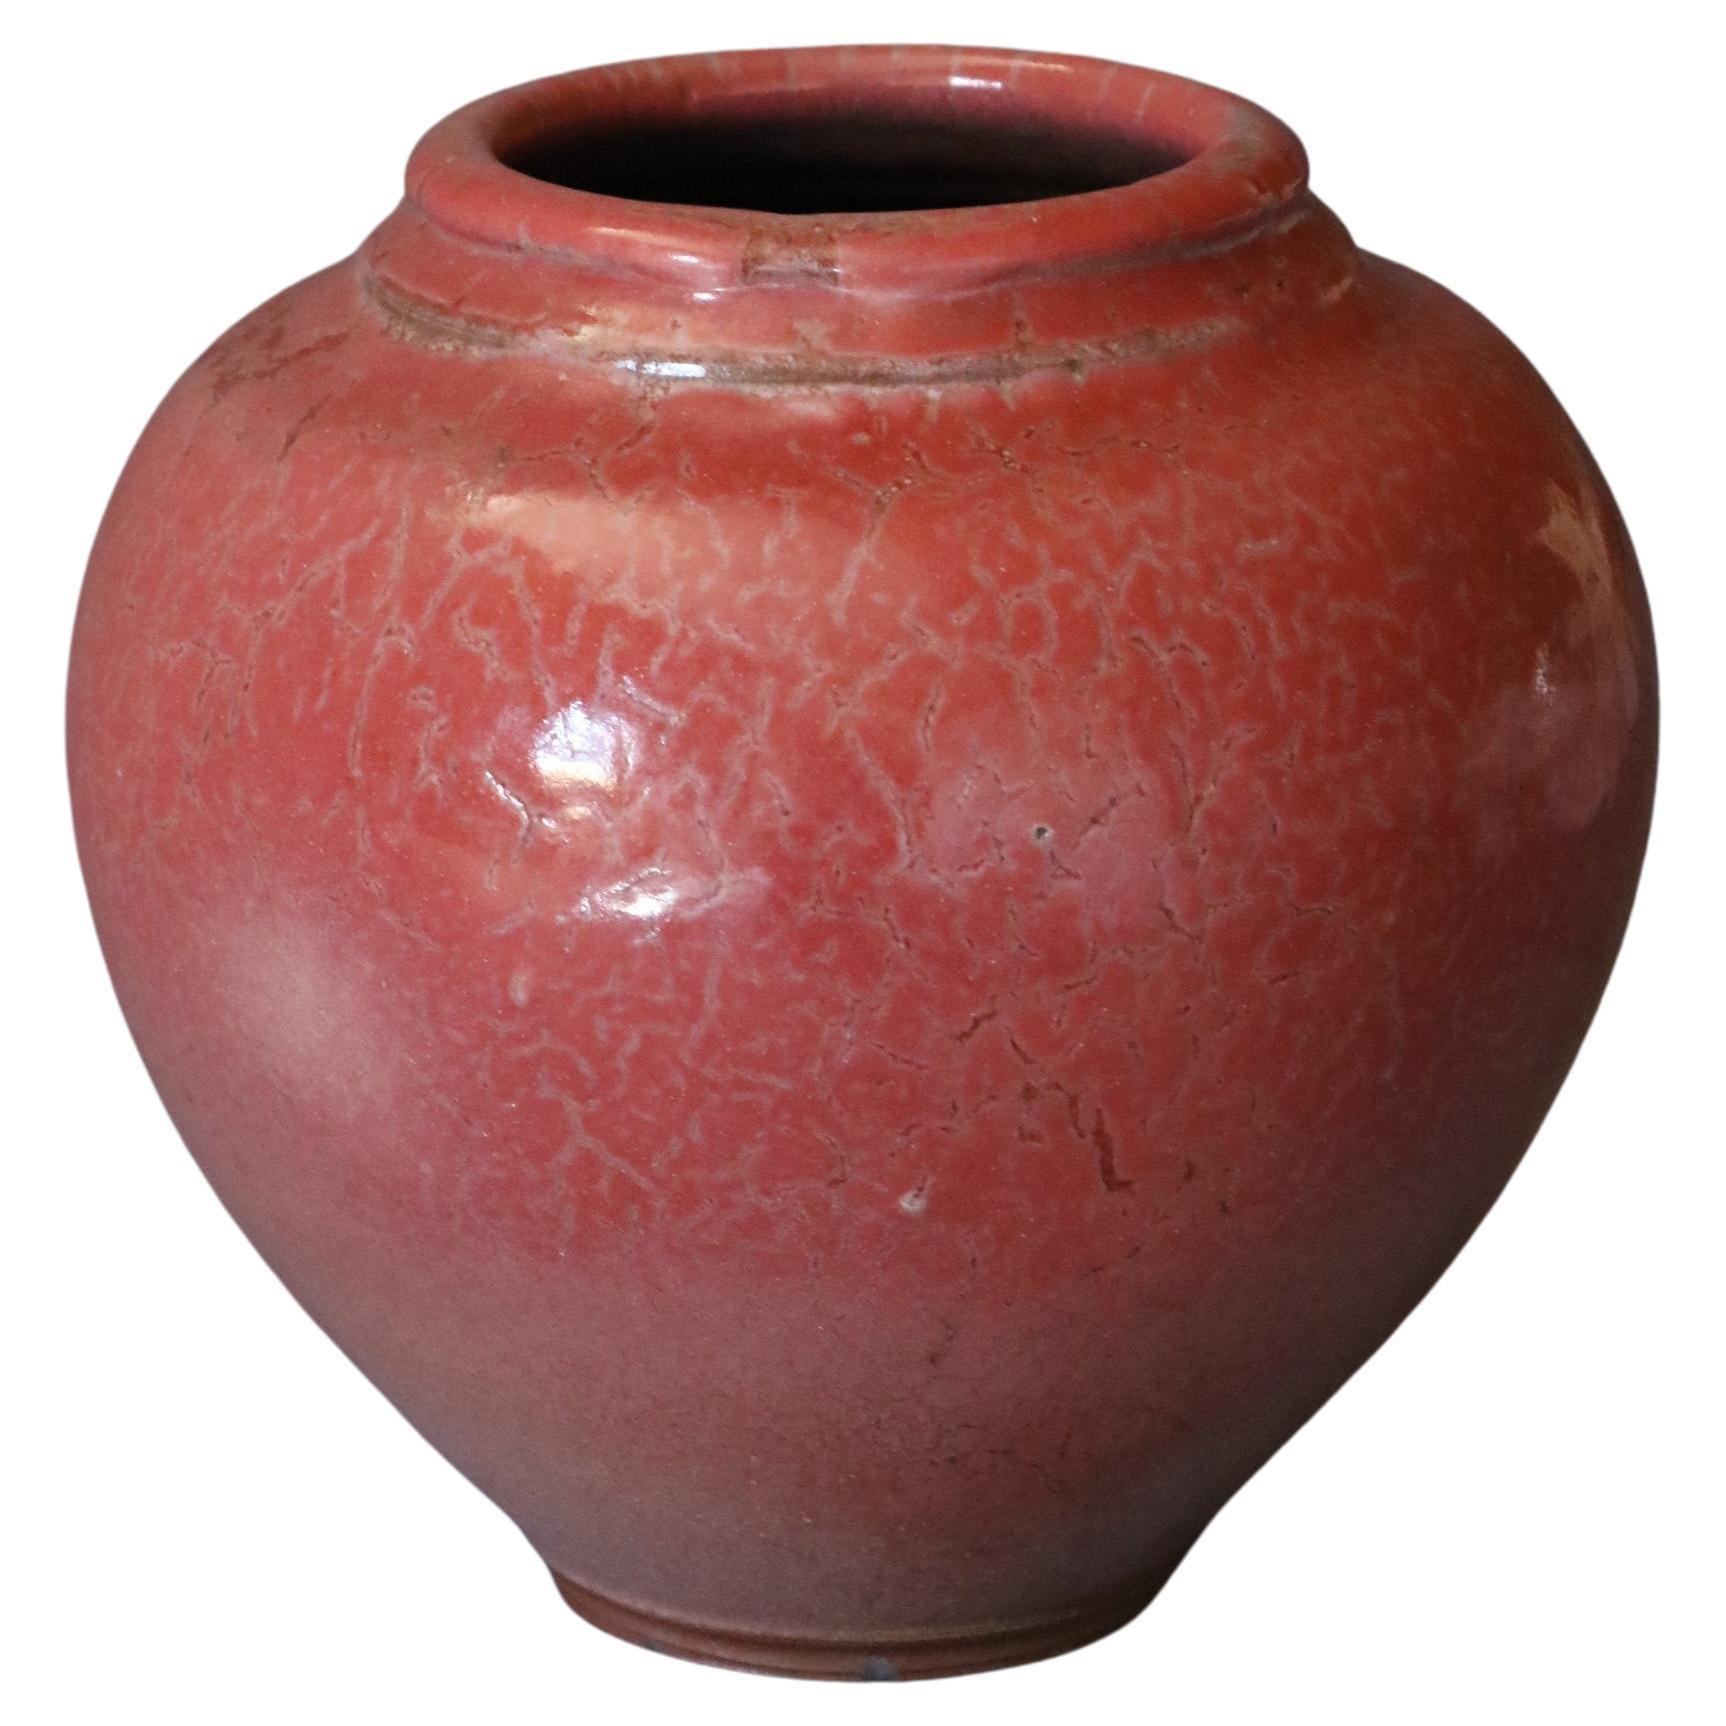 Grand vase rouge en céramique française de Marc Uzan, datant d'environ 2000